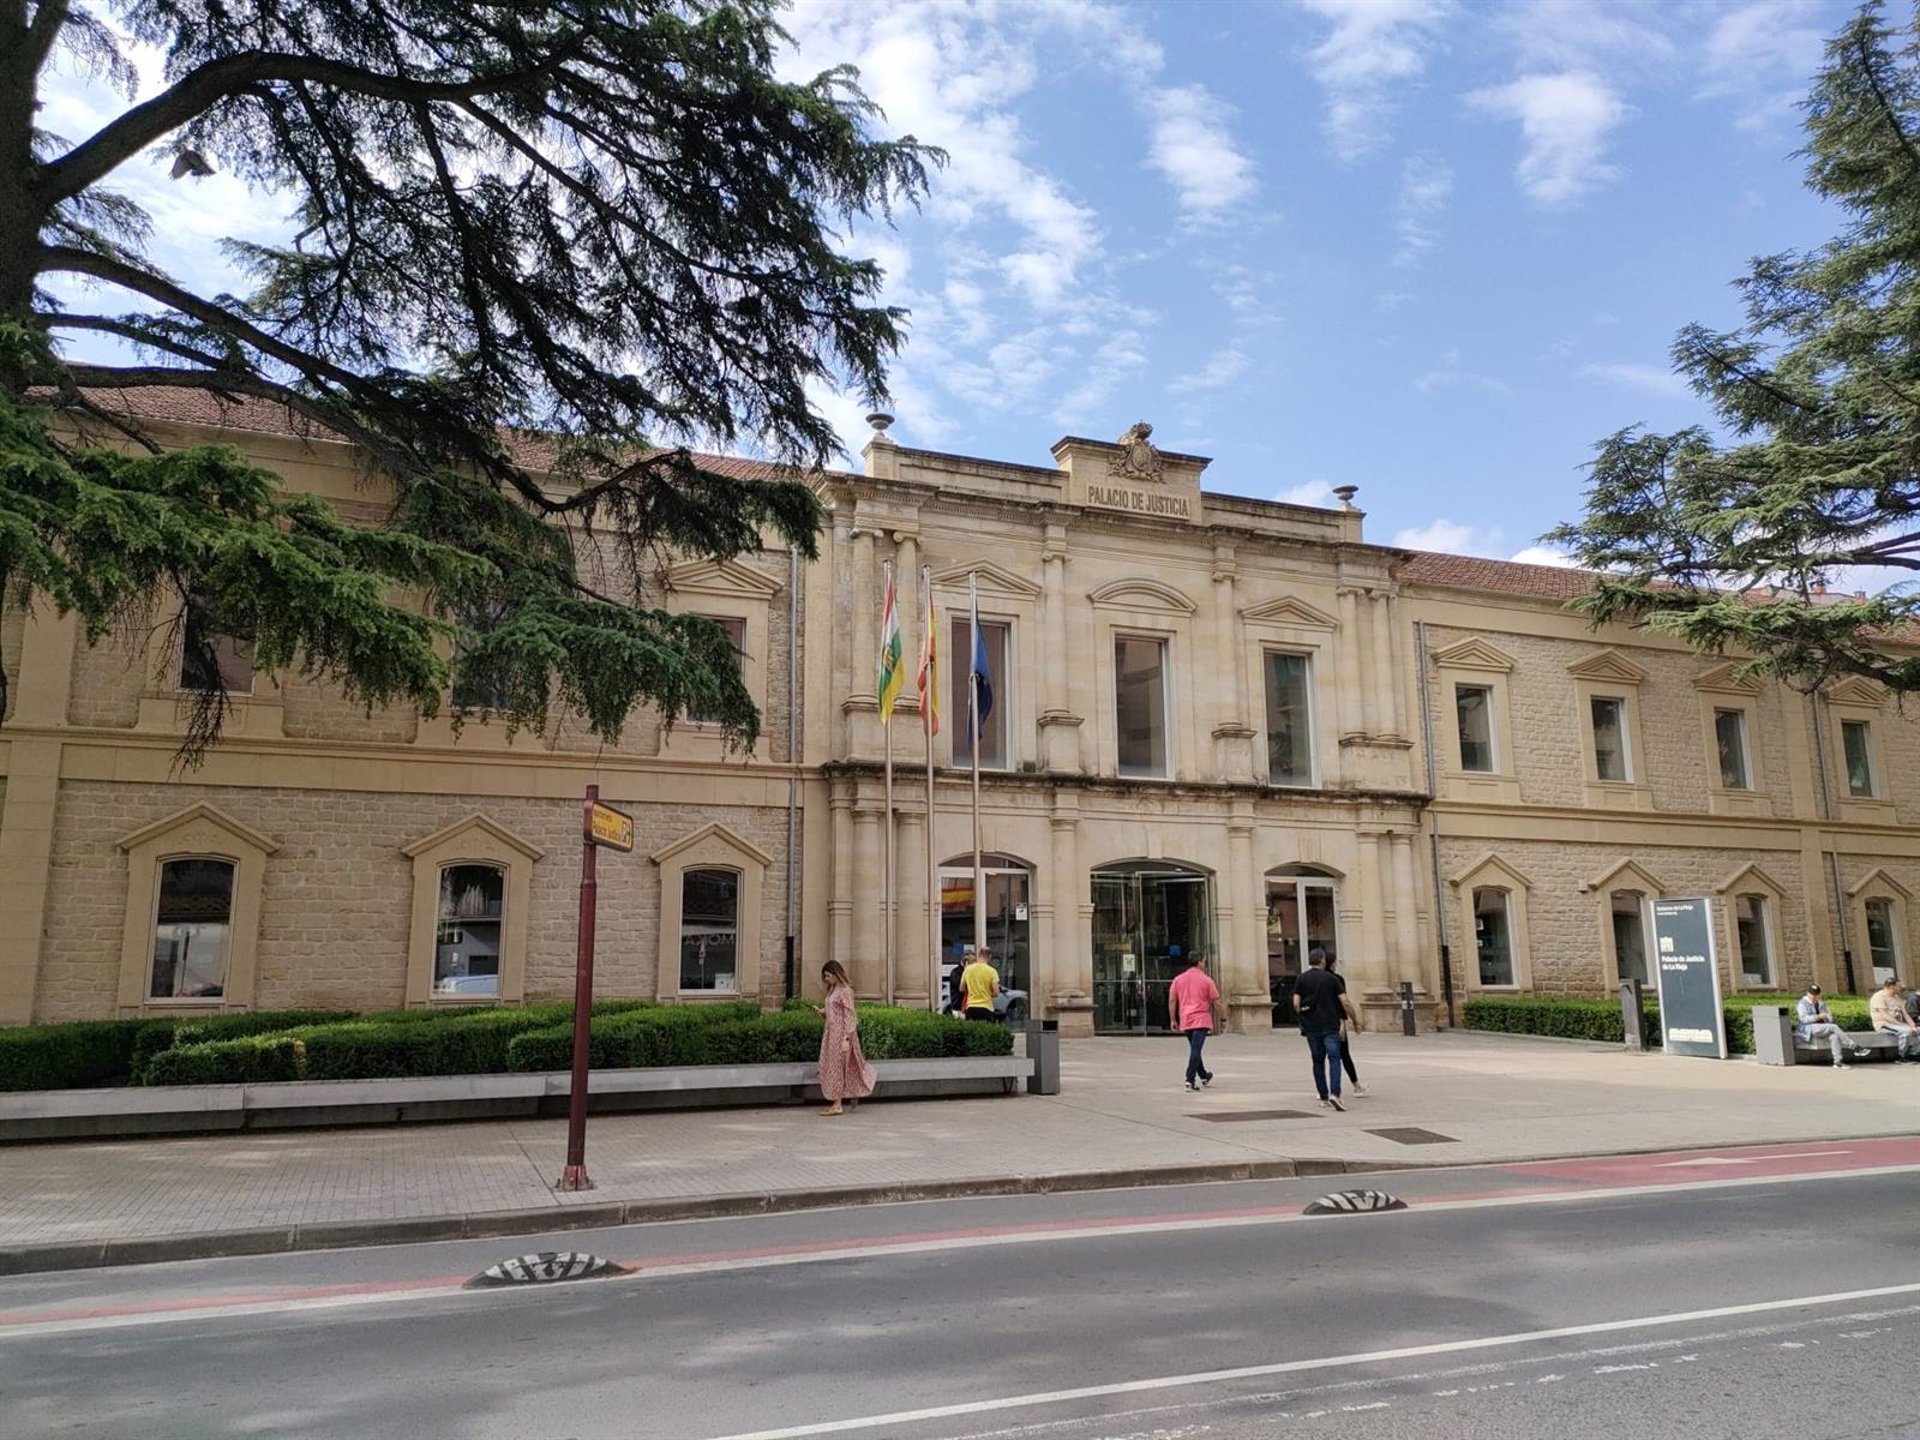 El juicio tendrá lugar el martes 7 de noviembre en la Audiencia Provincial de Logroño.